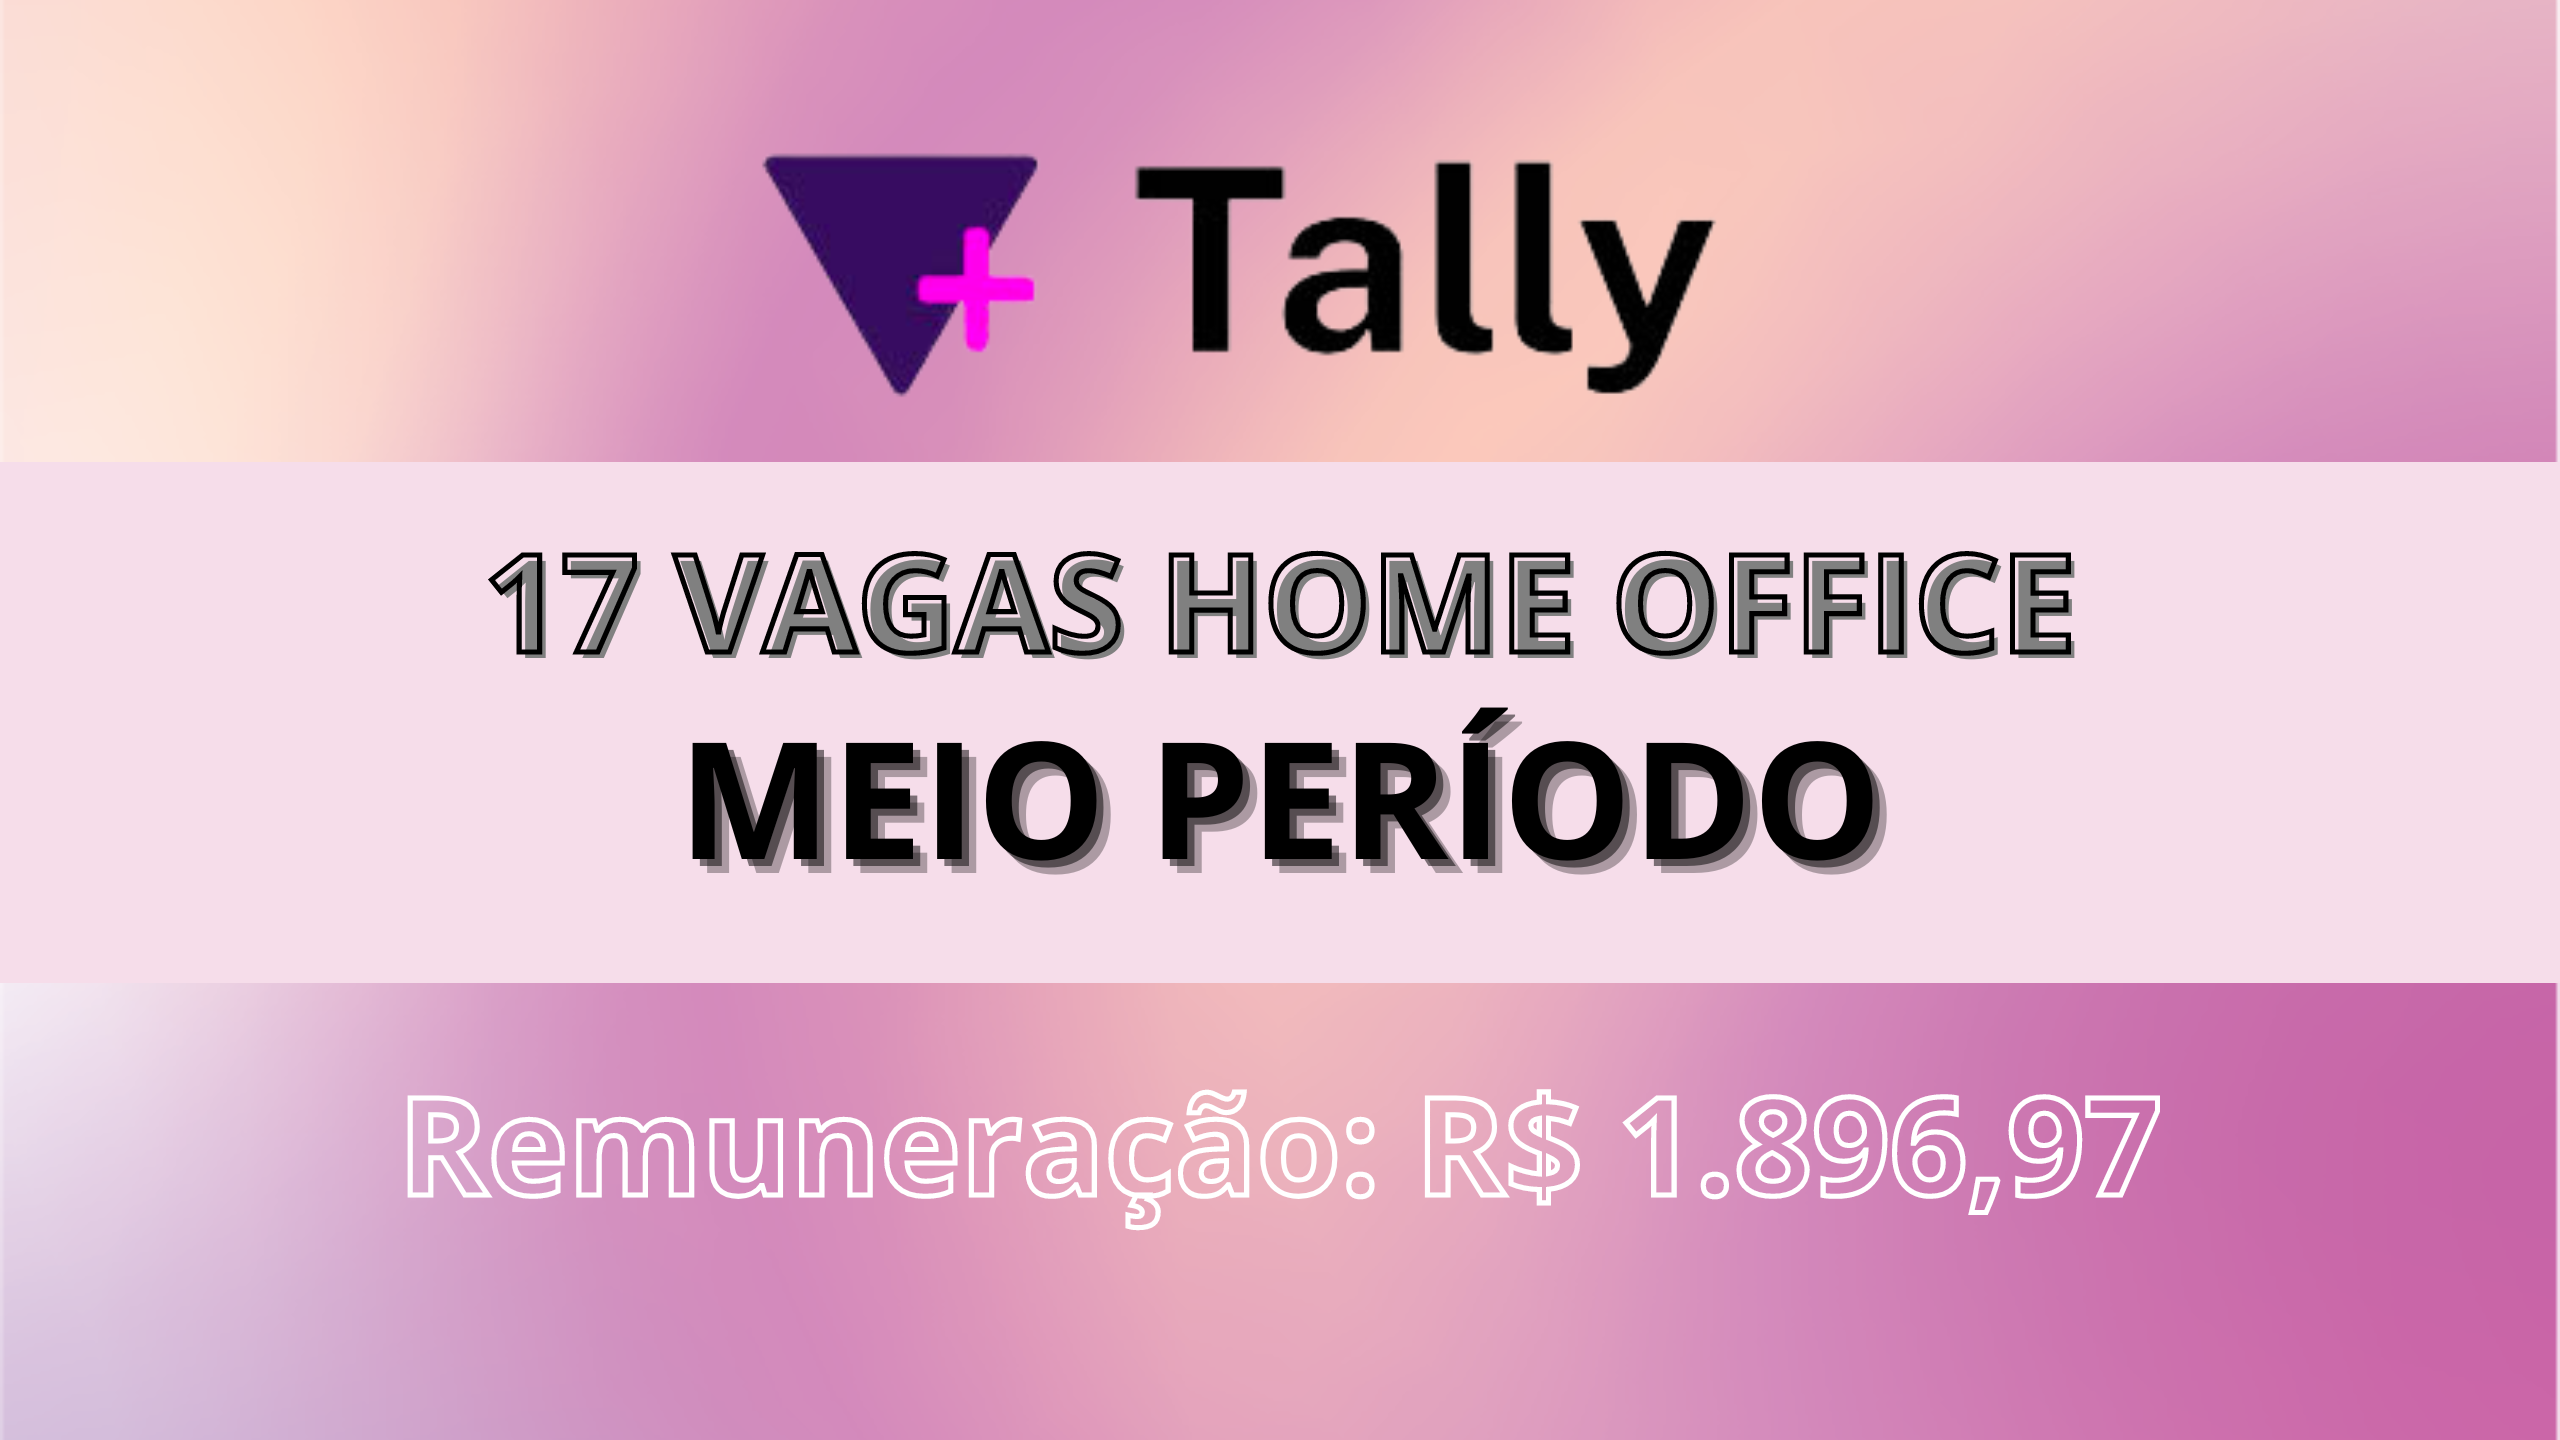 Home Office! Tally abre 17 Vagas Meio Período com salário de R$ 1.896,97 a empresa fornece equipamento!